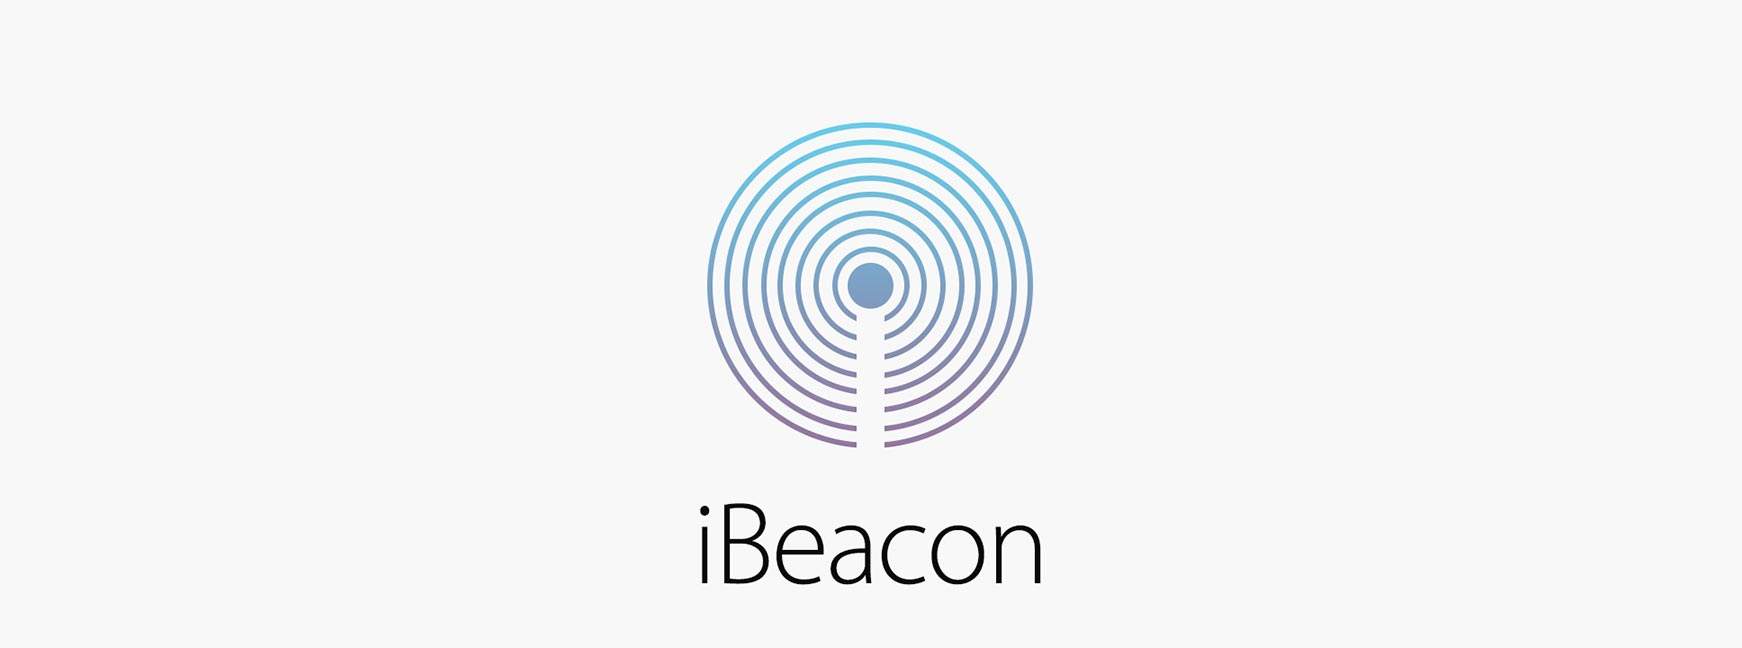 Una guía para desarrollar con iBeacon para balizas Bluetooth